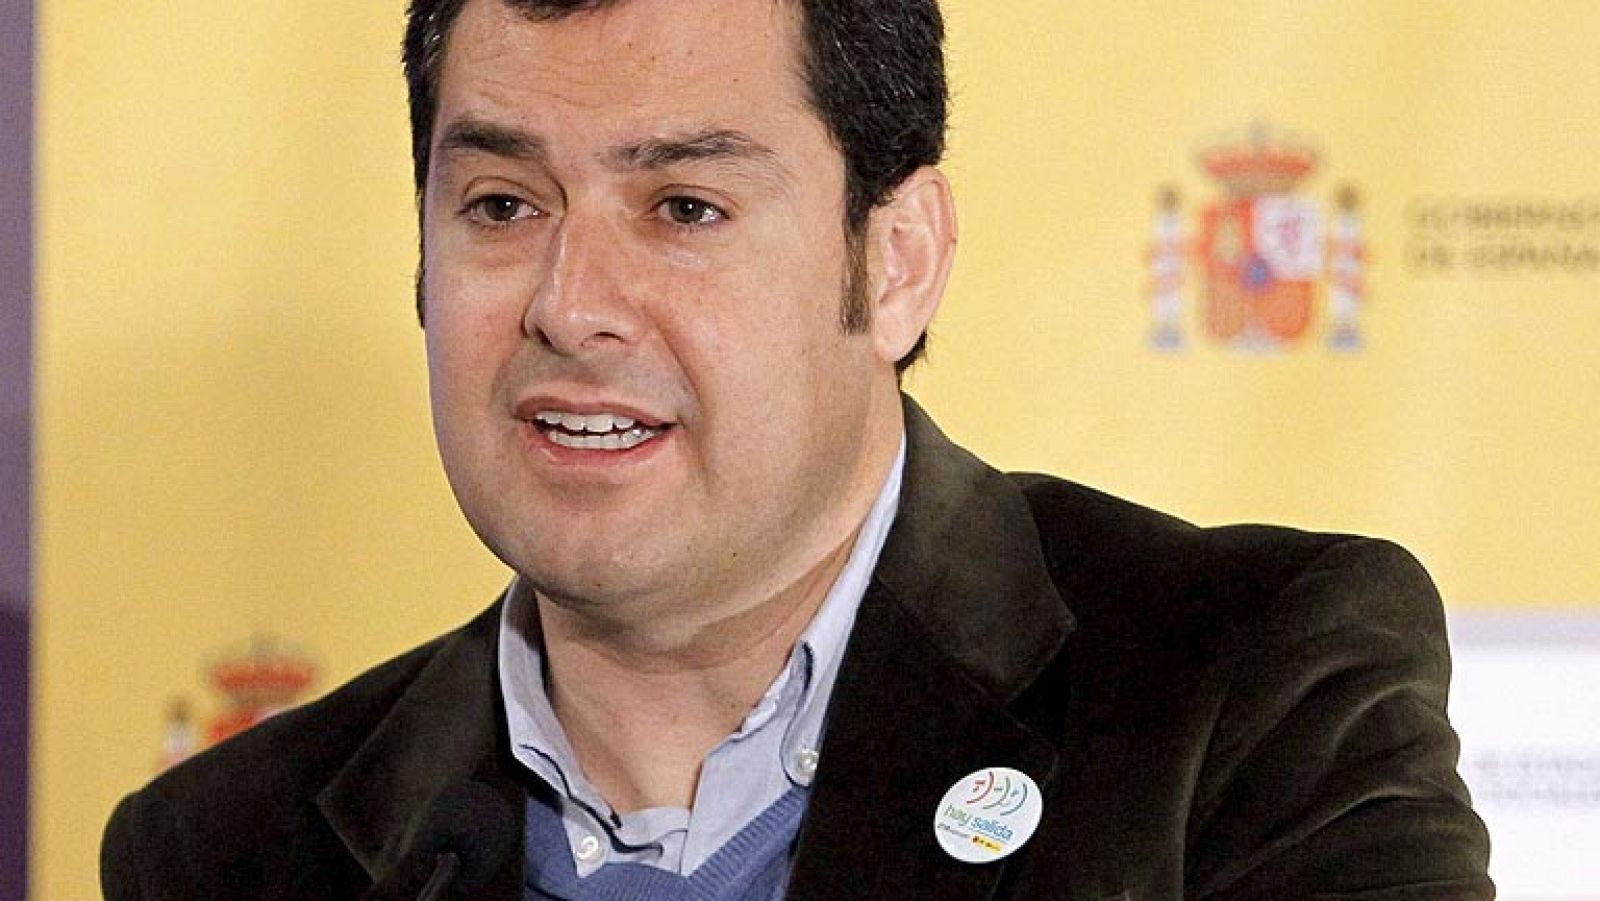 Juan Manuel Moreno primero en posicionarse como candidato popular para Andalucía